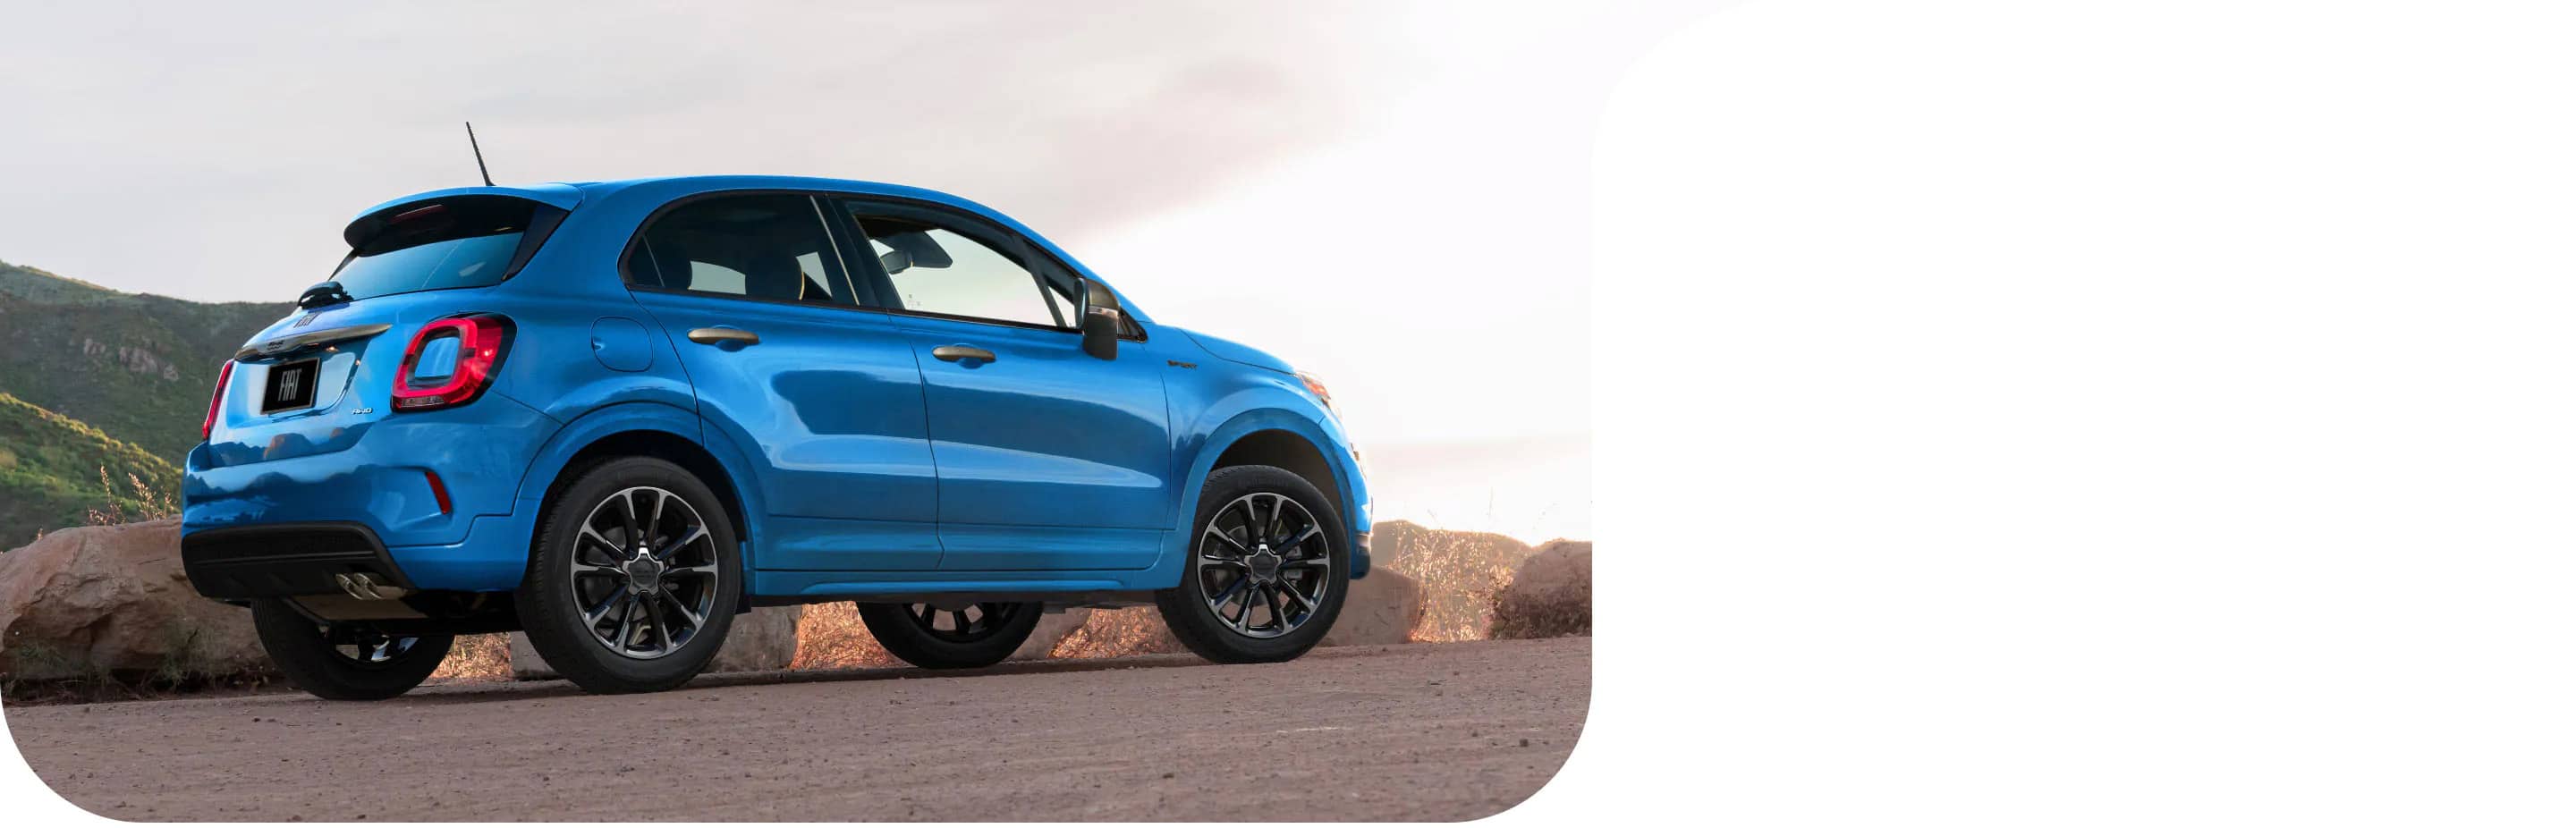 Vista trasera de medio perfil de un Fiat 500X Sport 2022 azul estacionado al costado de una carretera al lado de una montaña.